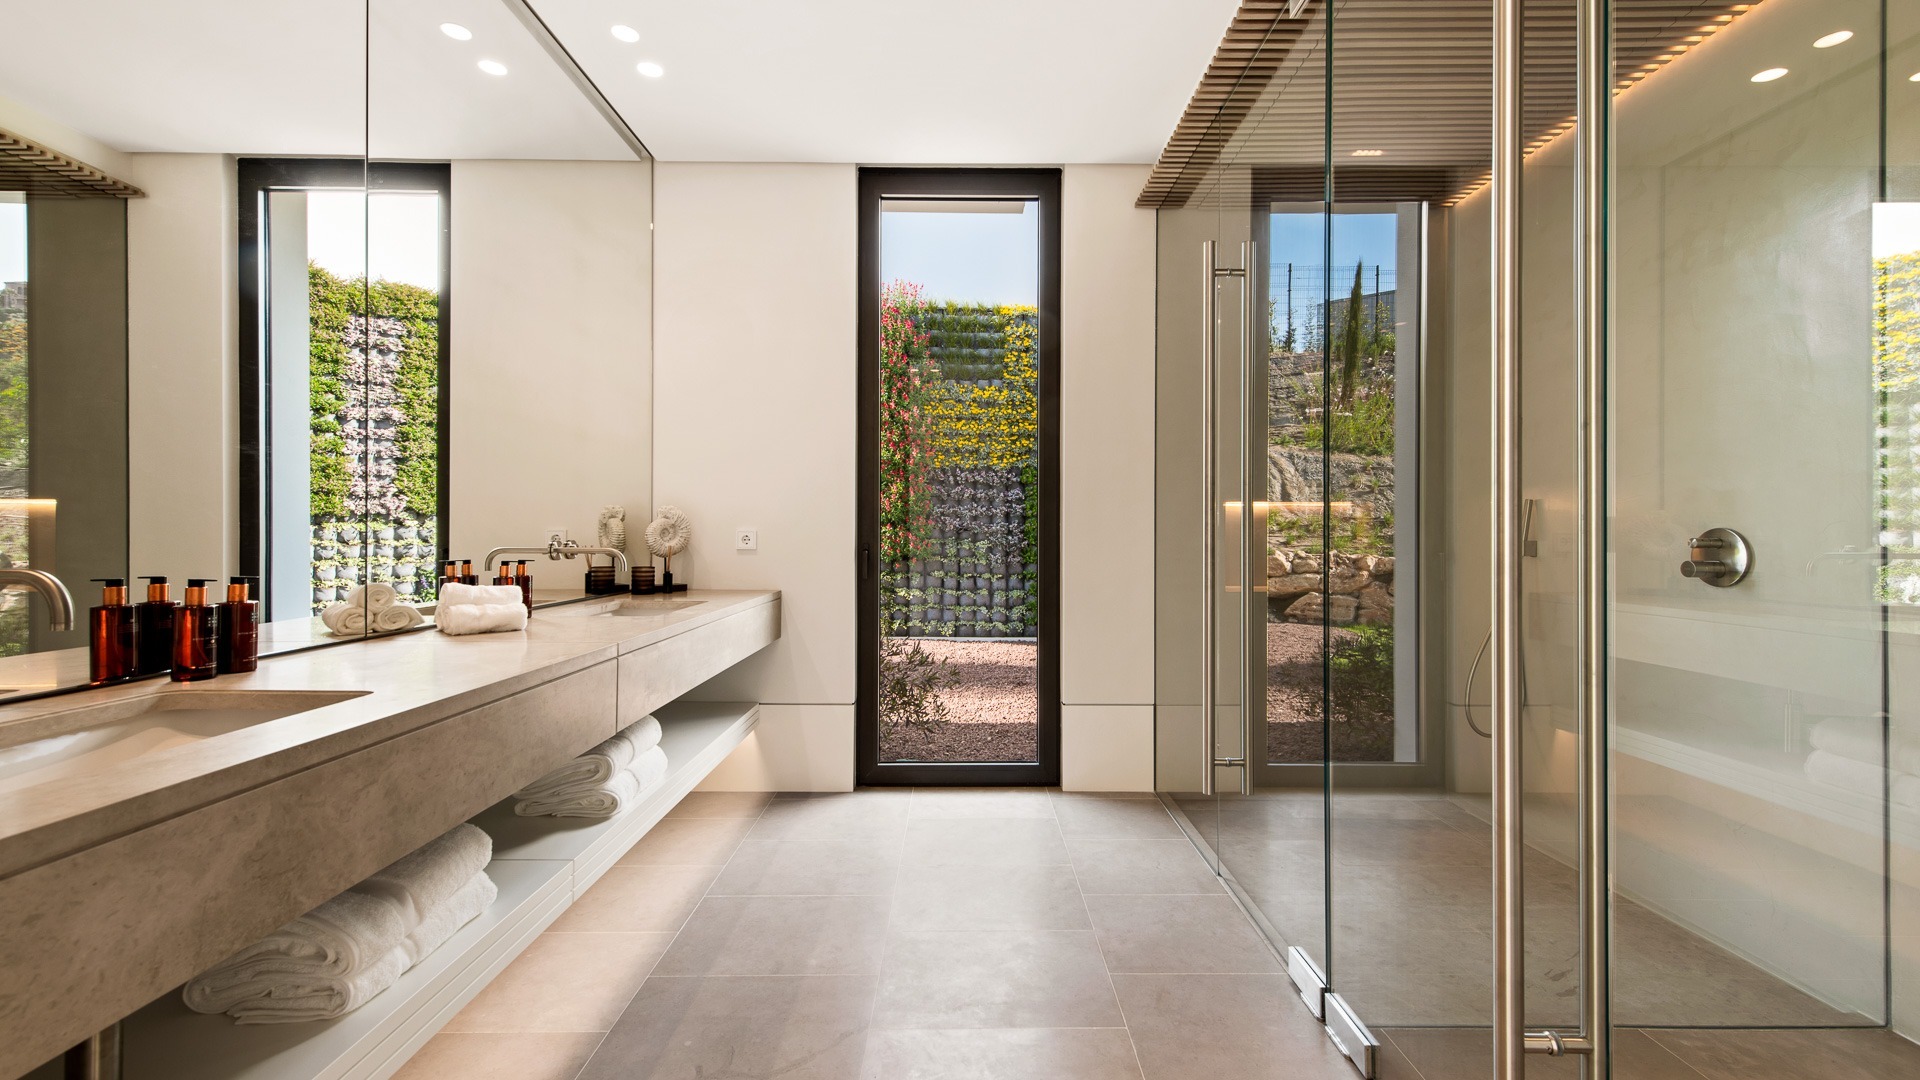 Exclusive top villa bathroom - El Herrojo - Benahavis